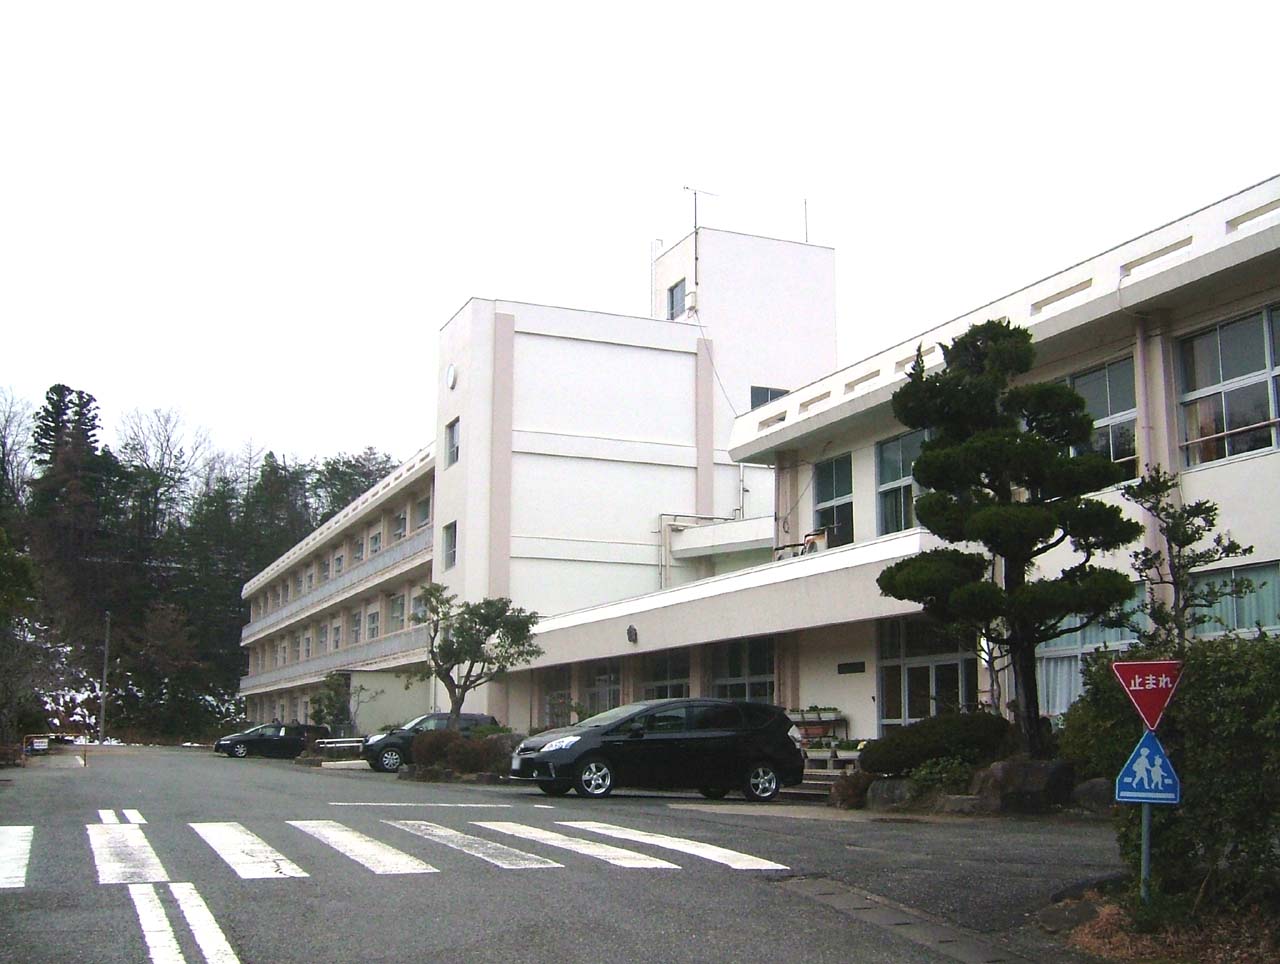 Primary school. Toyooka City Gosho to elementary school (elementary school) 925m